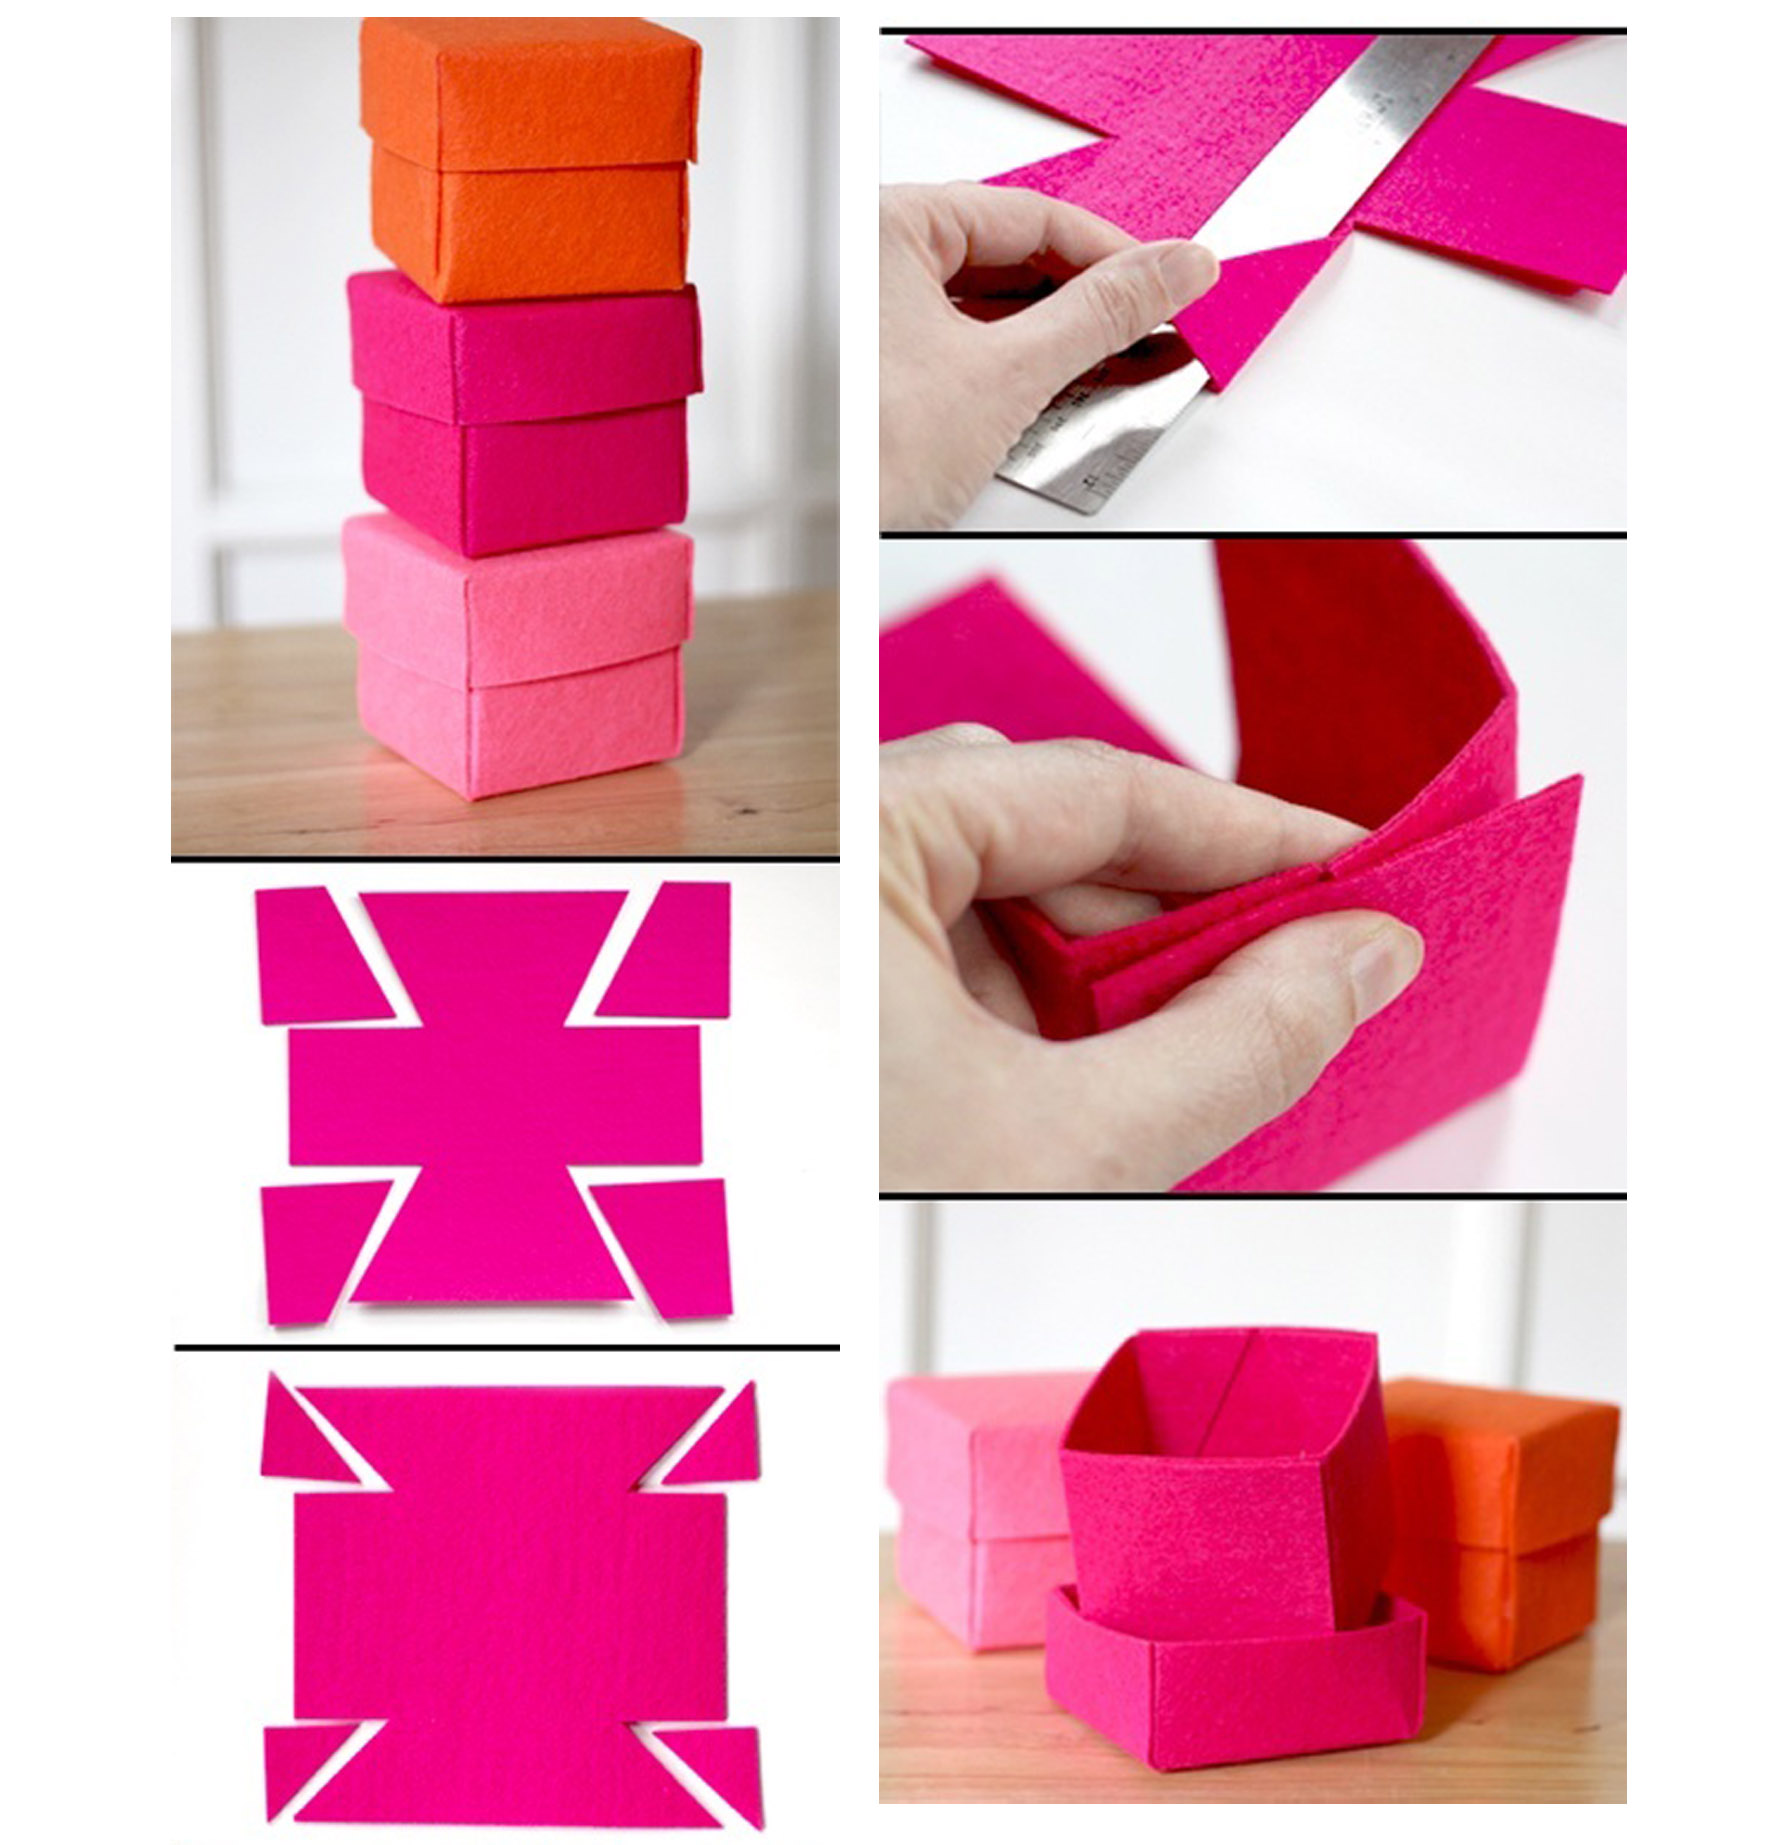 Как сделать коробку для подарка из бумаги